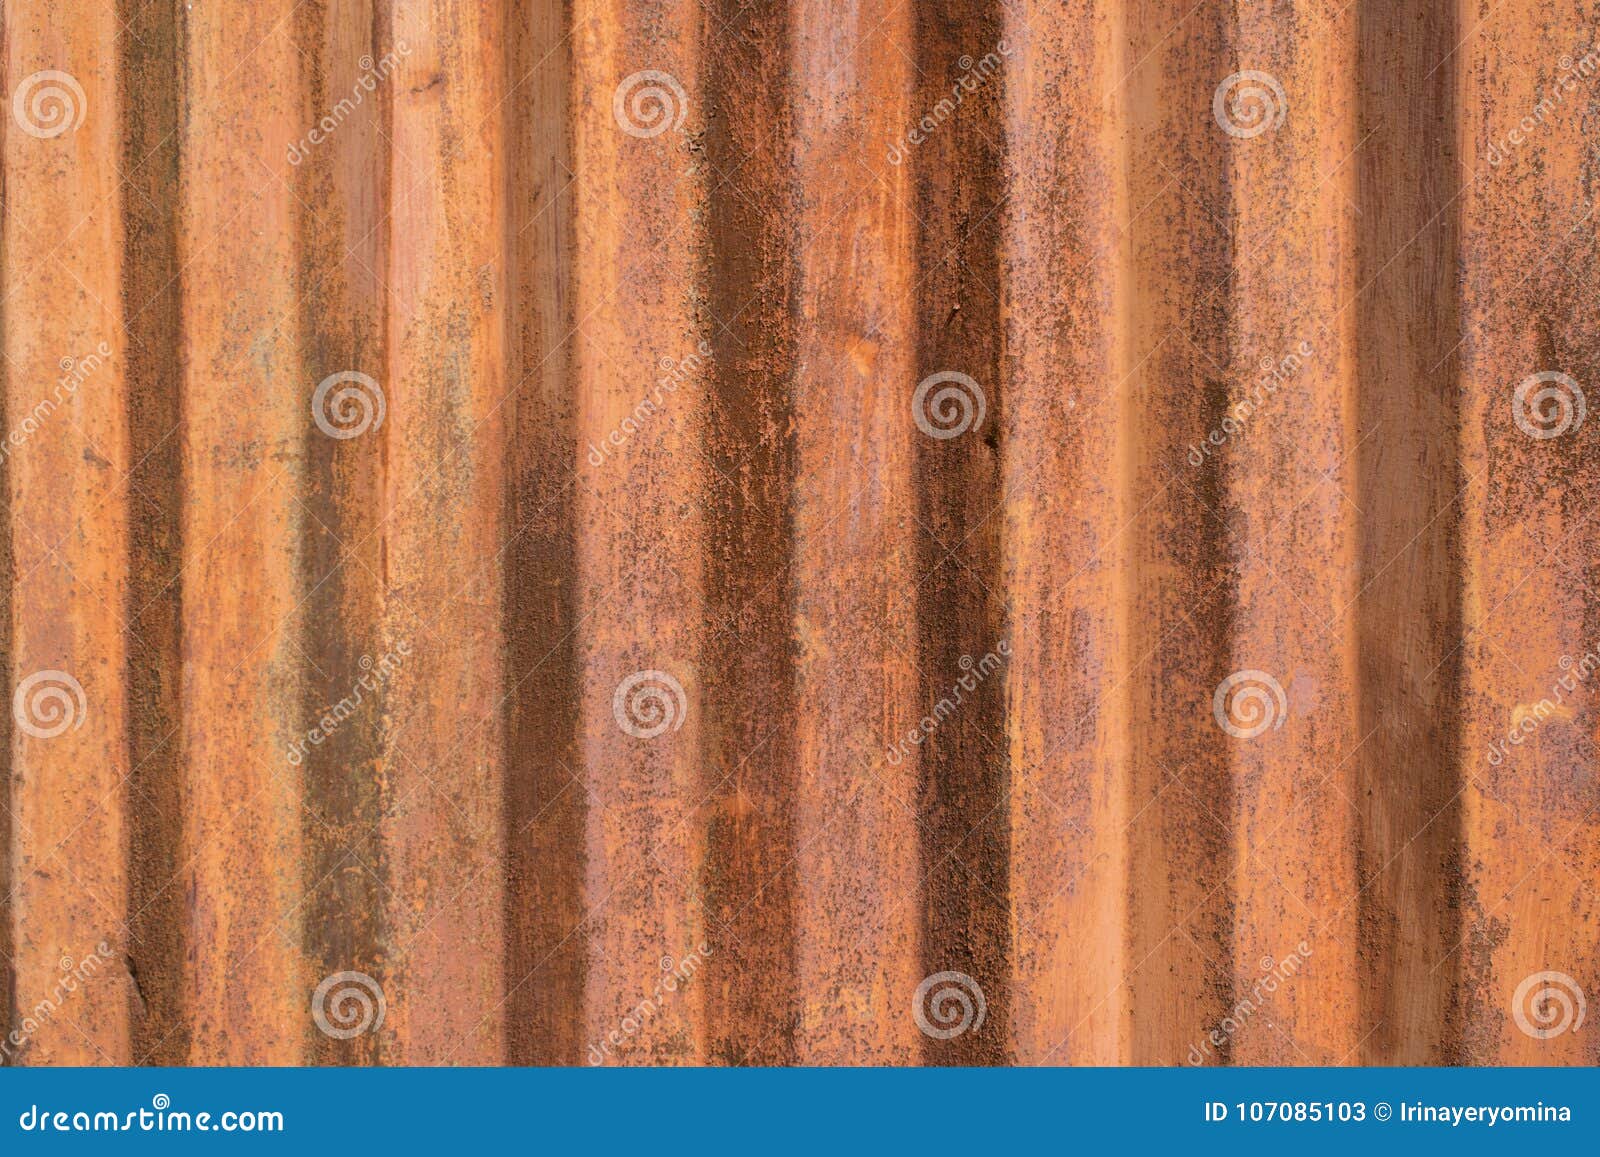 Rust brown цвет фото 39